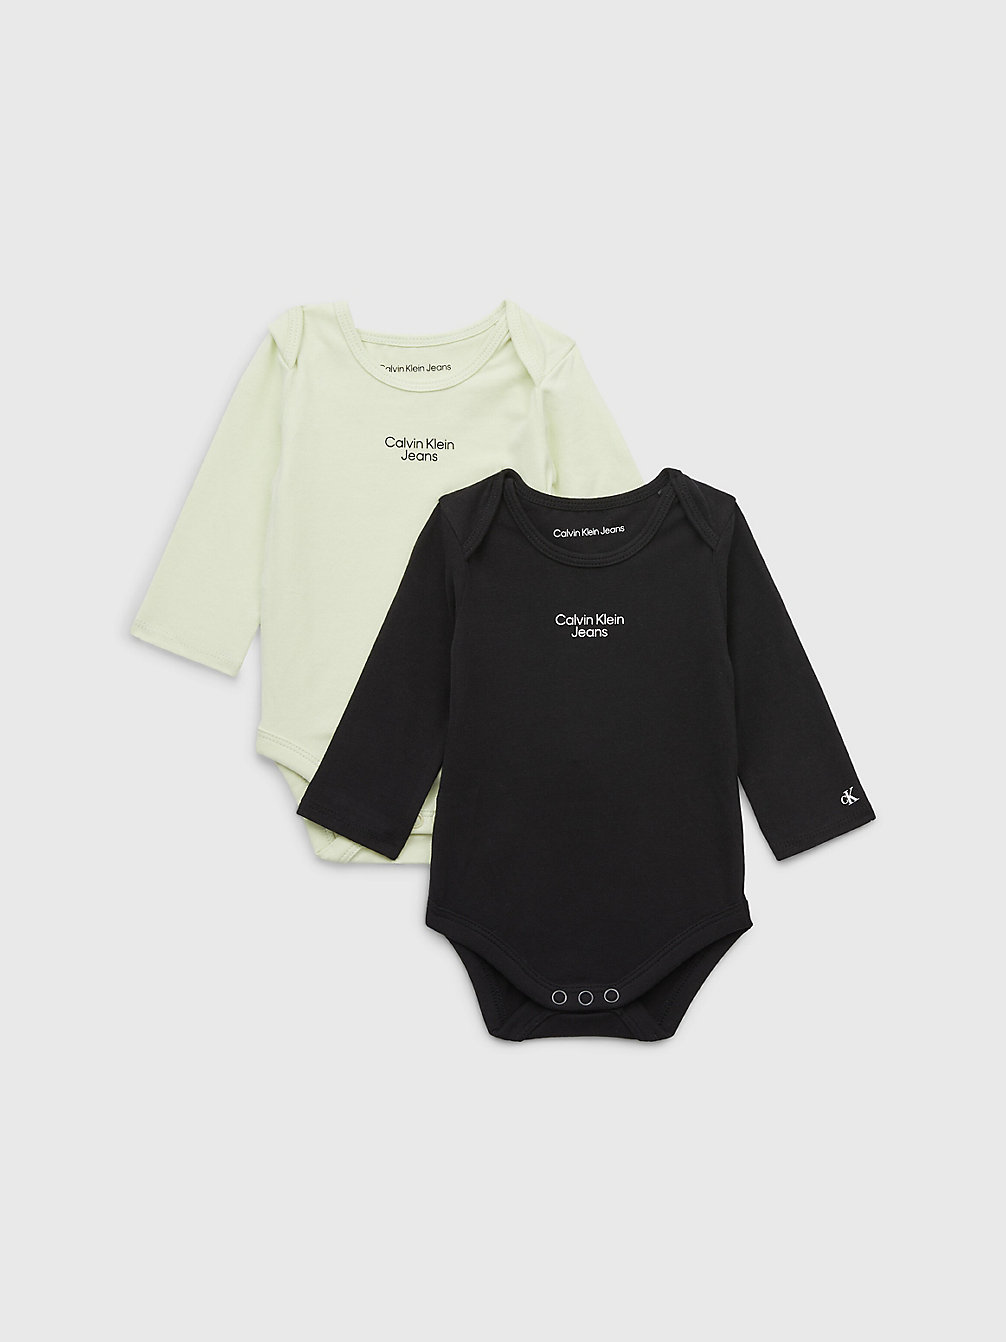 SEAFOAM GREEN/ CK BLACK > 2er-Pack Baby-Body > undefined newborn - Calvin Klein